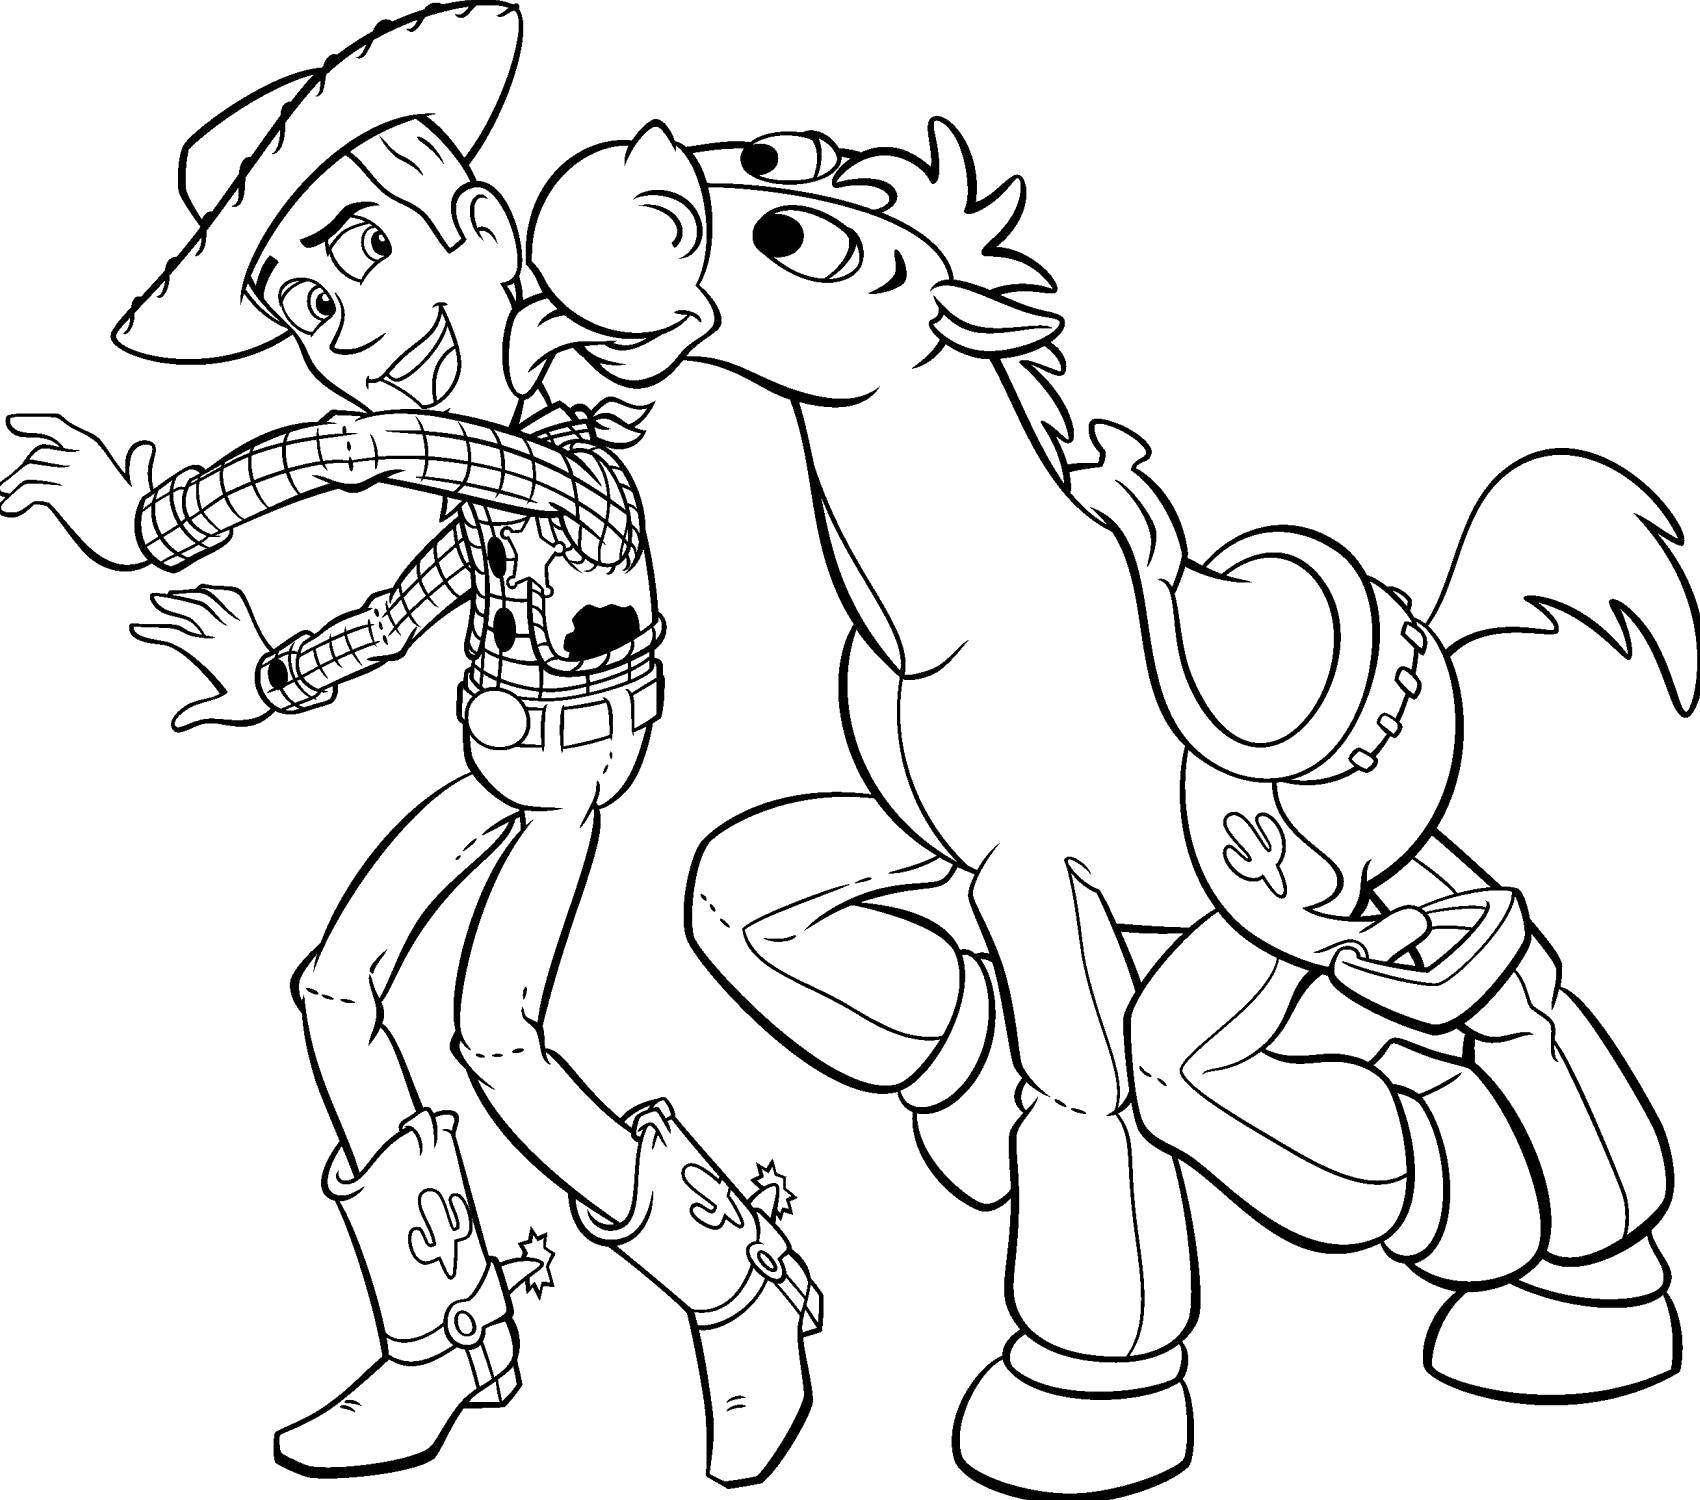 Название: Раскраска Шериф вуди с конём.. Категория: раскраски. Теги: Персонаж из мультфильма, История игрушек .